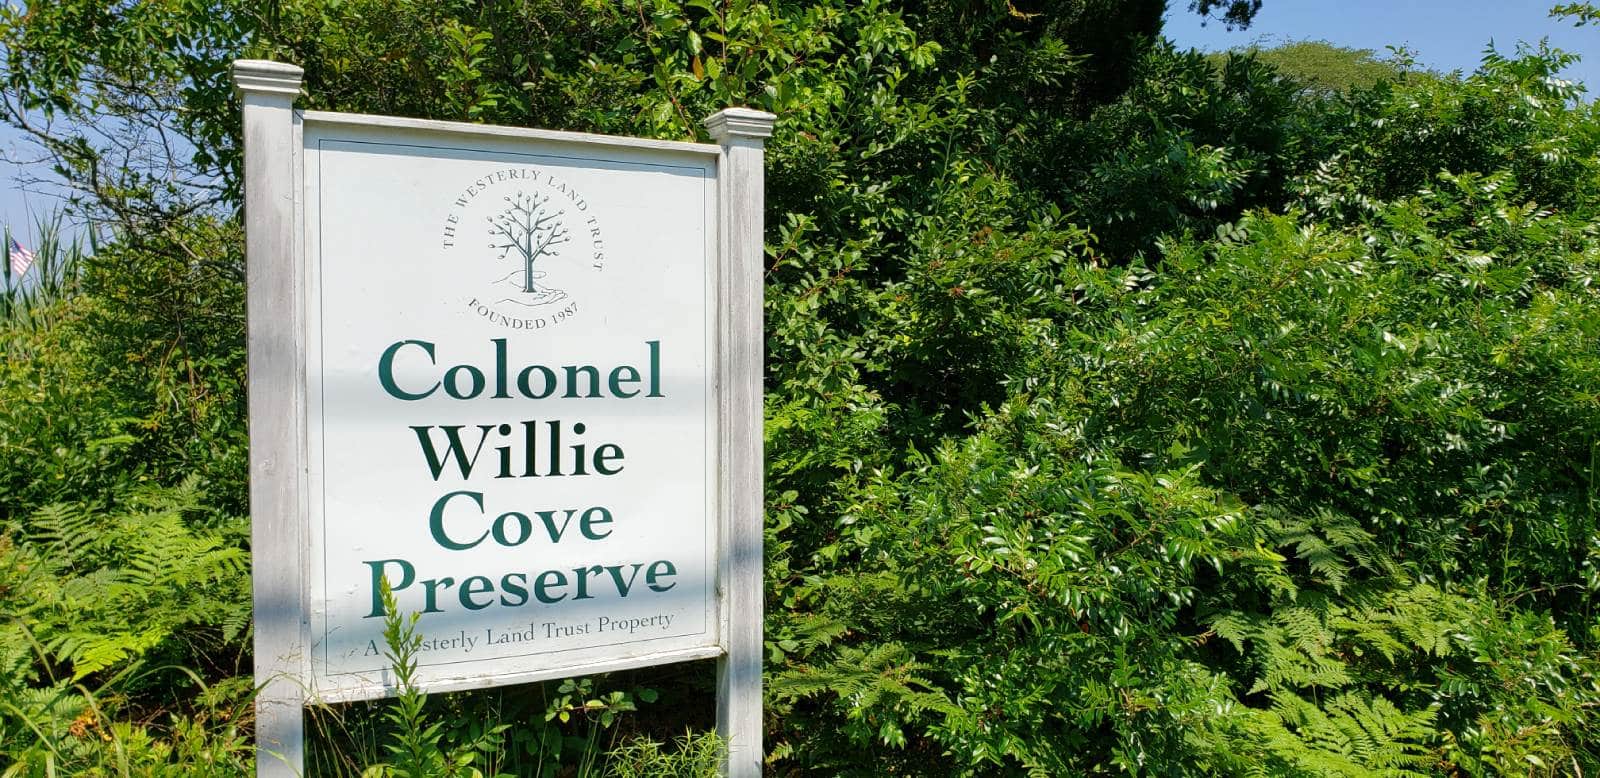 Colonel Willie Cove Preserve